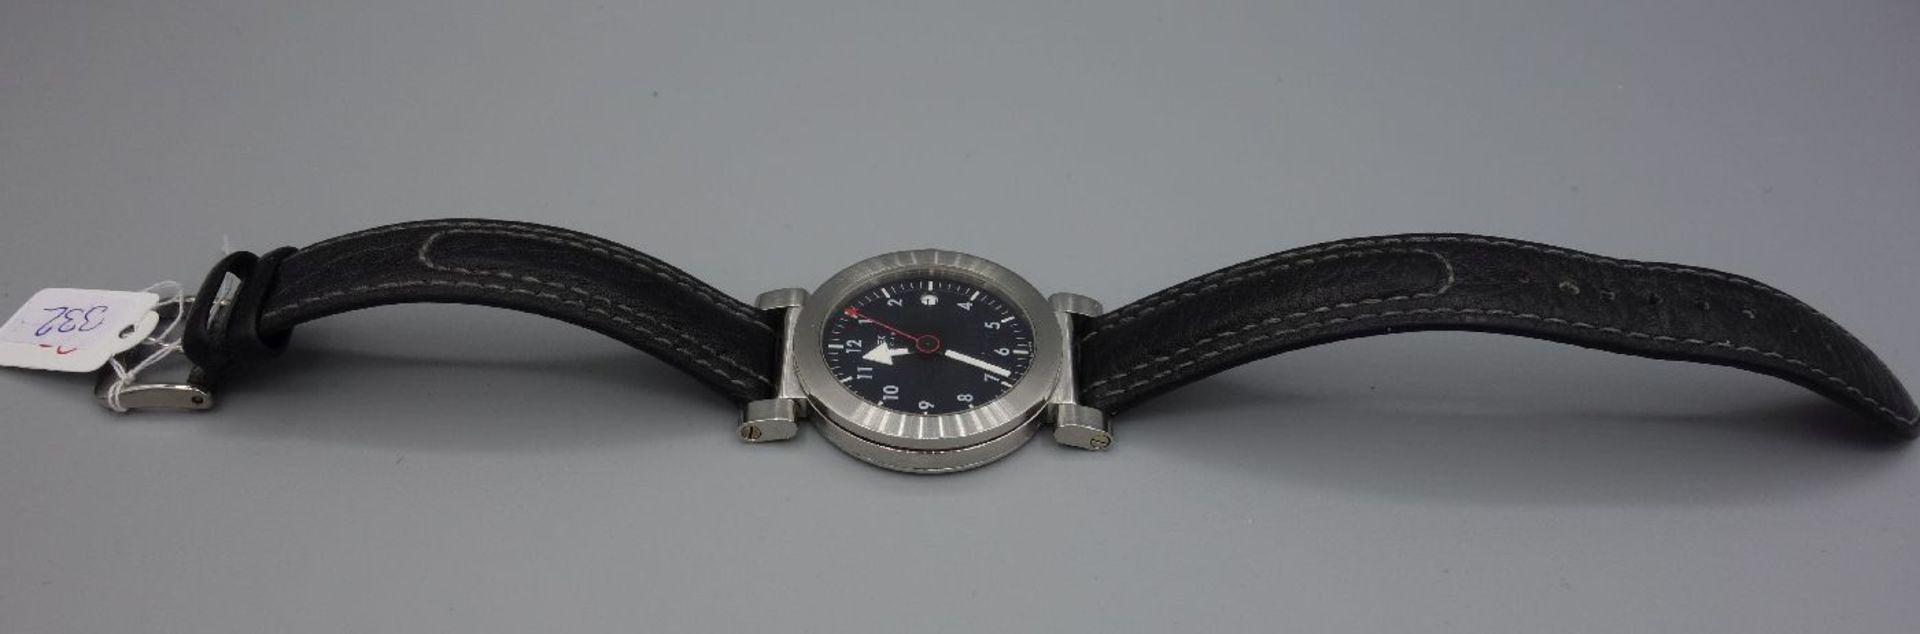 ARMBANDUHR - XEMEX OFFROAD / wristwatch, Quarz, Schweiz. Rundes Edelstahlgehäuse an schwarzem - Bild 3 aus 7